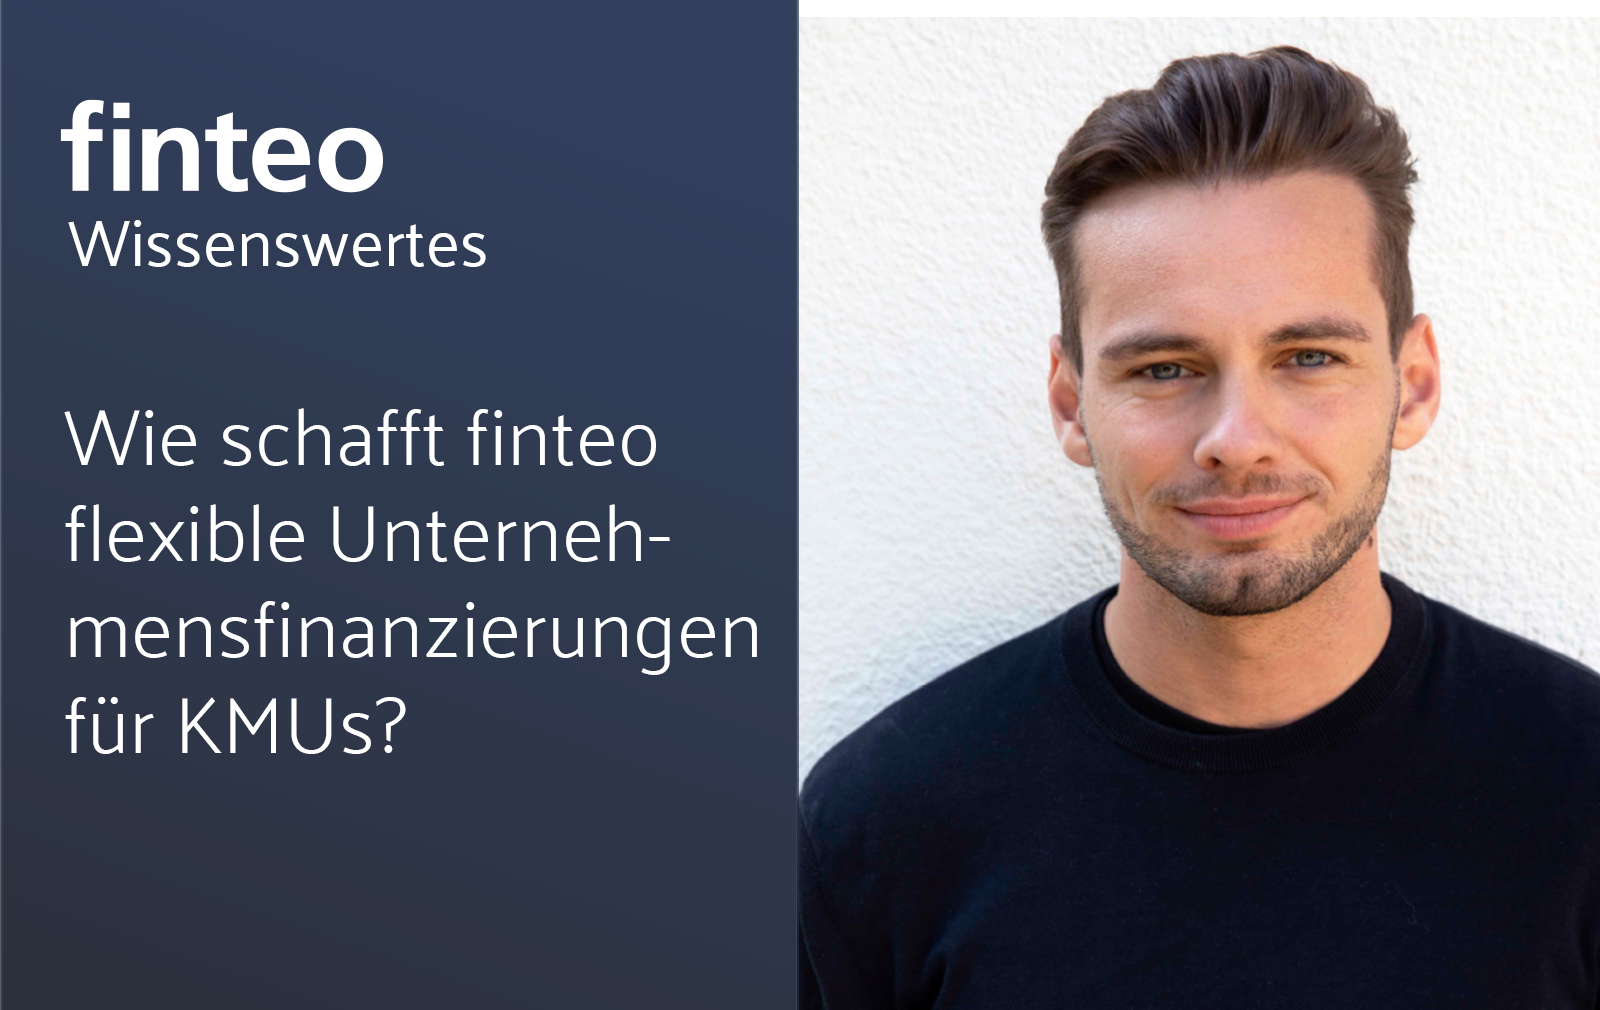 finteo.de|Wie schafft finteo flexible Unternehmensfinanzierungen für KMUs?-Wissenswertes – Unternehmensfinanzierung für KMUs